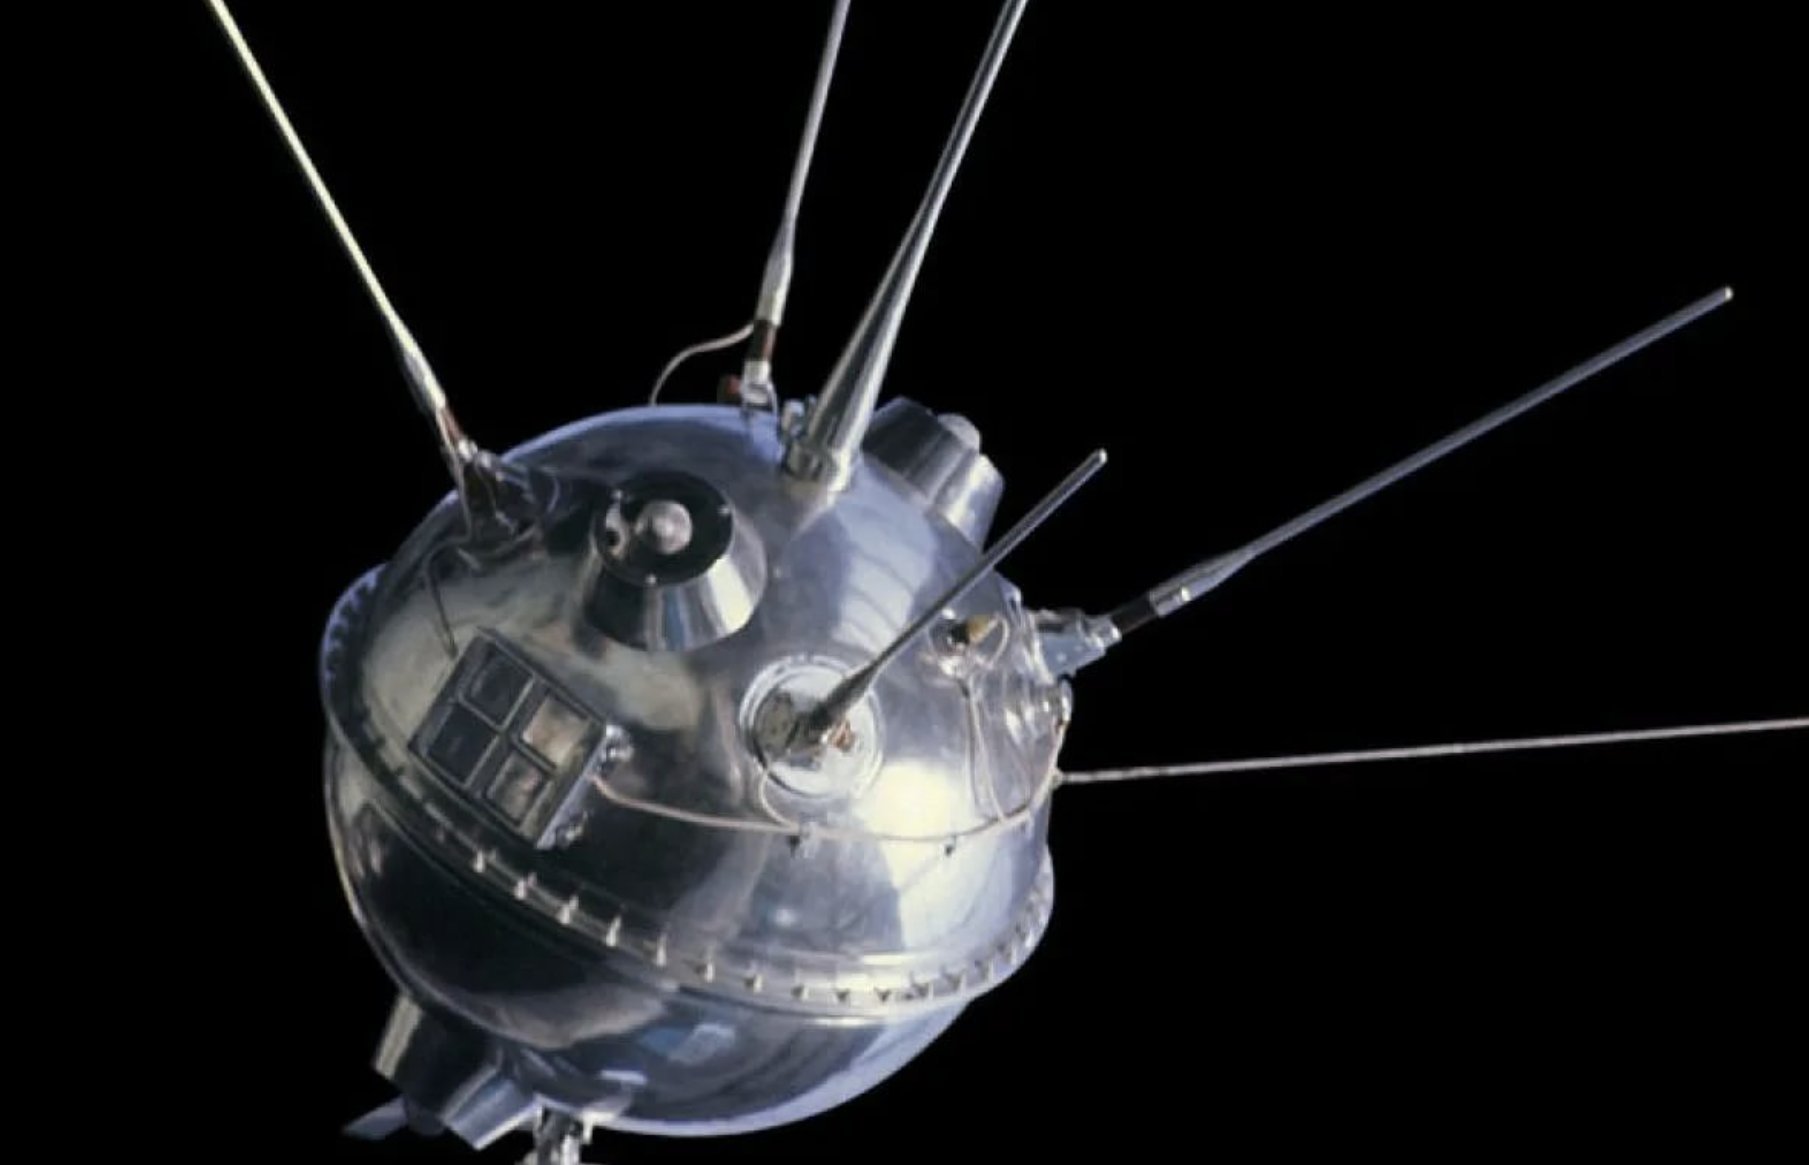 Первый спутник картинка. Луна-1 автоматическая межпланетная станция. Луна-2 автоматическая межпланетная станция. Советская станция Луна 1. Автоматическая межпланетная станция «Луна-17», в СССР.